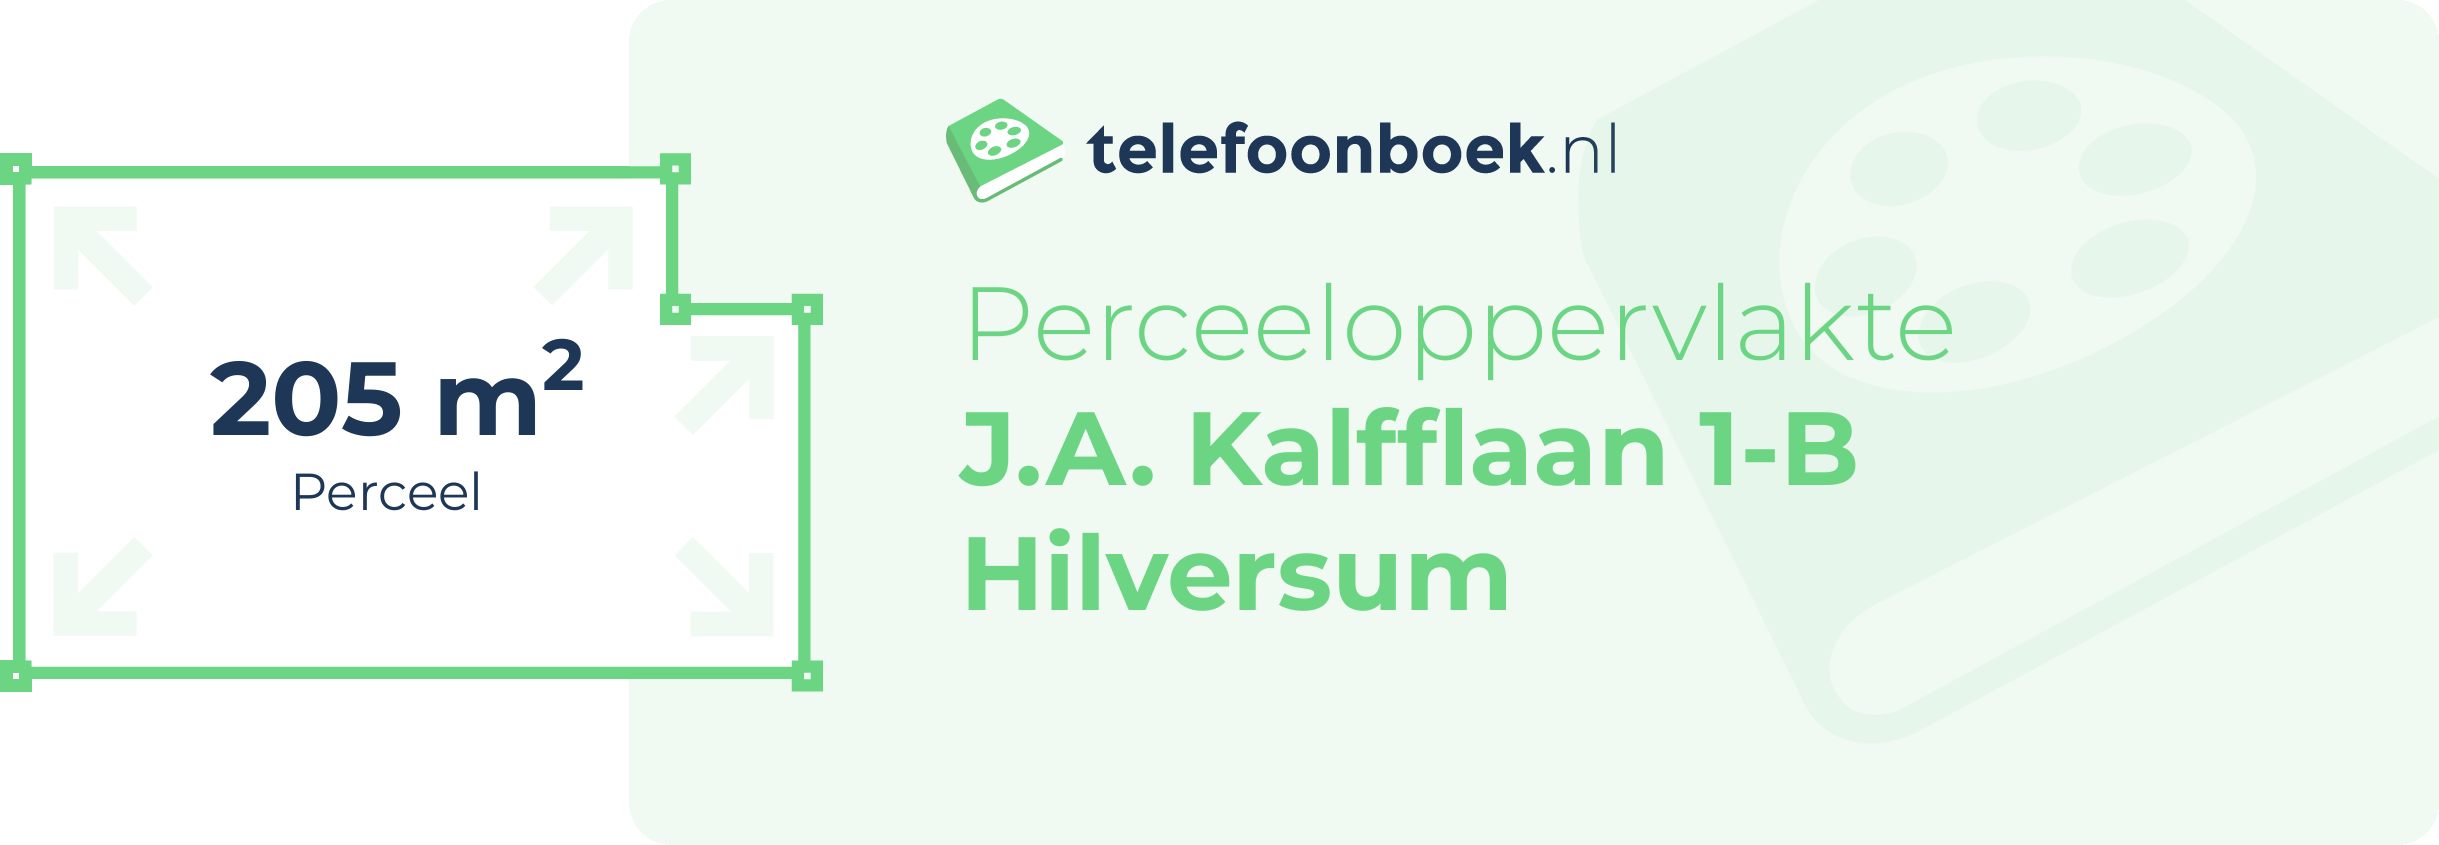 Perceeloppervlakte J.A. Kalfflaan 1-B Hilversum